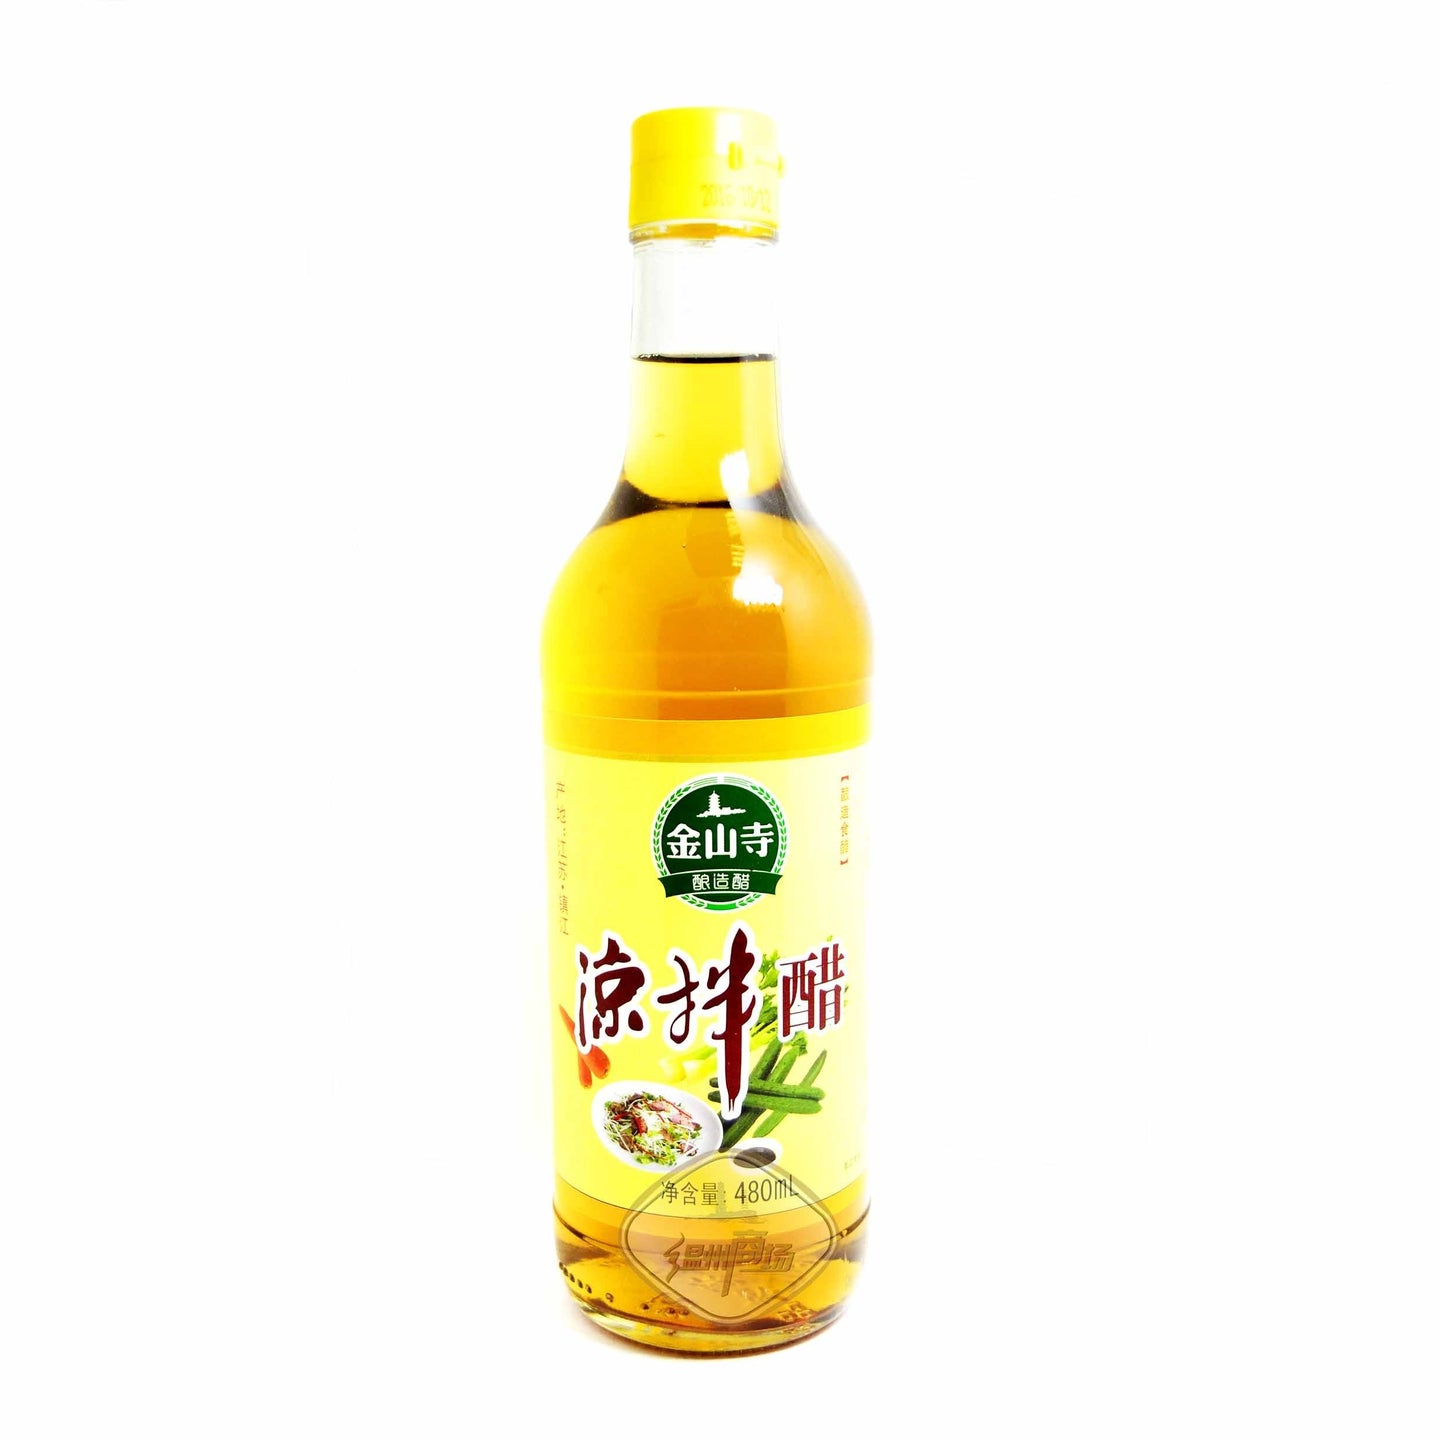 金山寺凉拌香醋550ml(Vinagre de arroz 480ml)